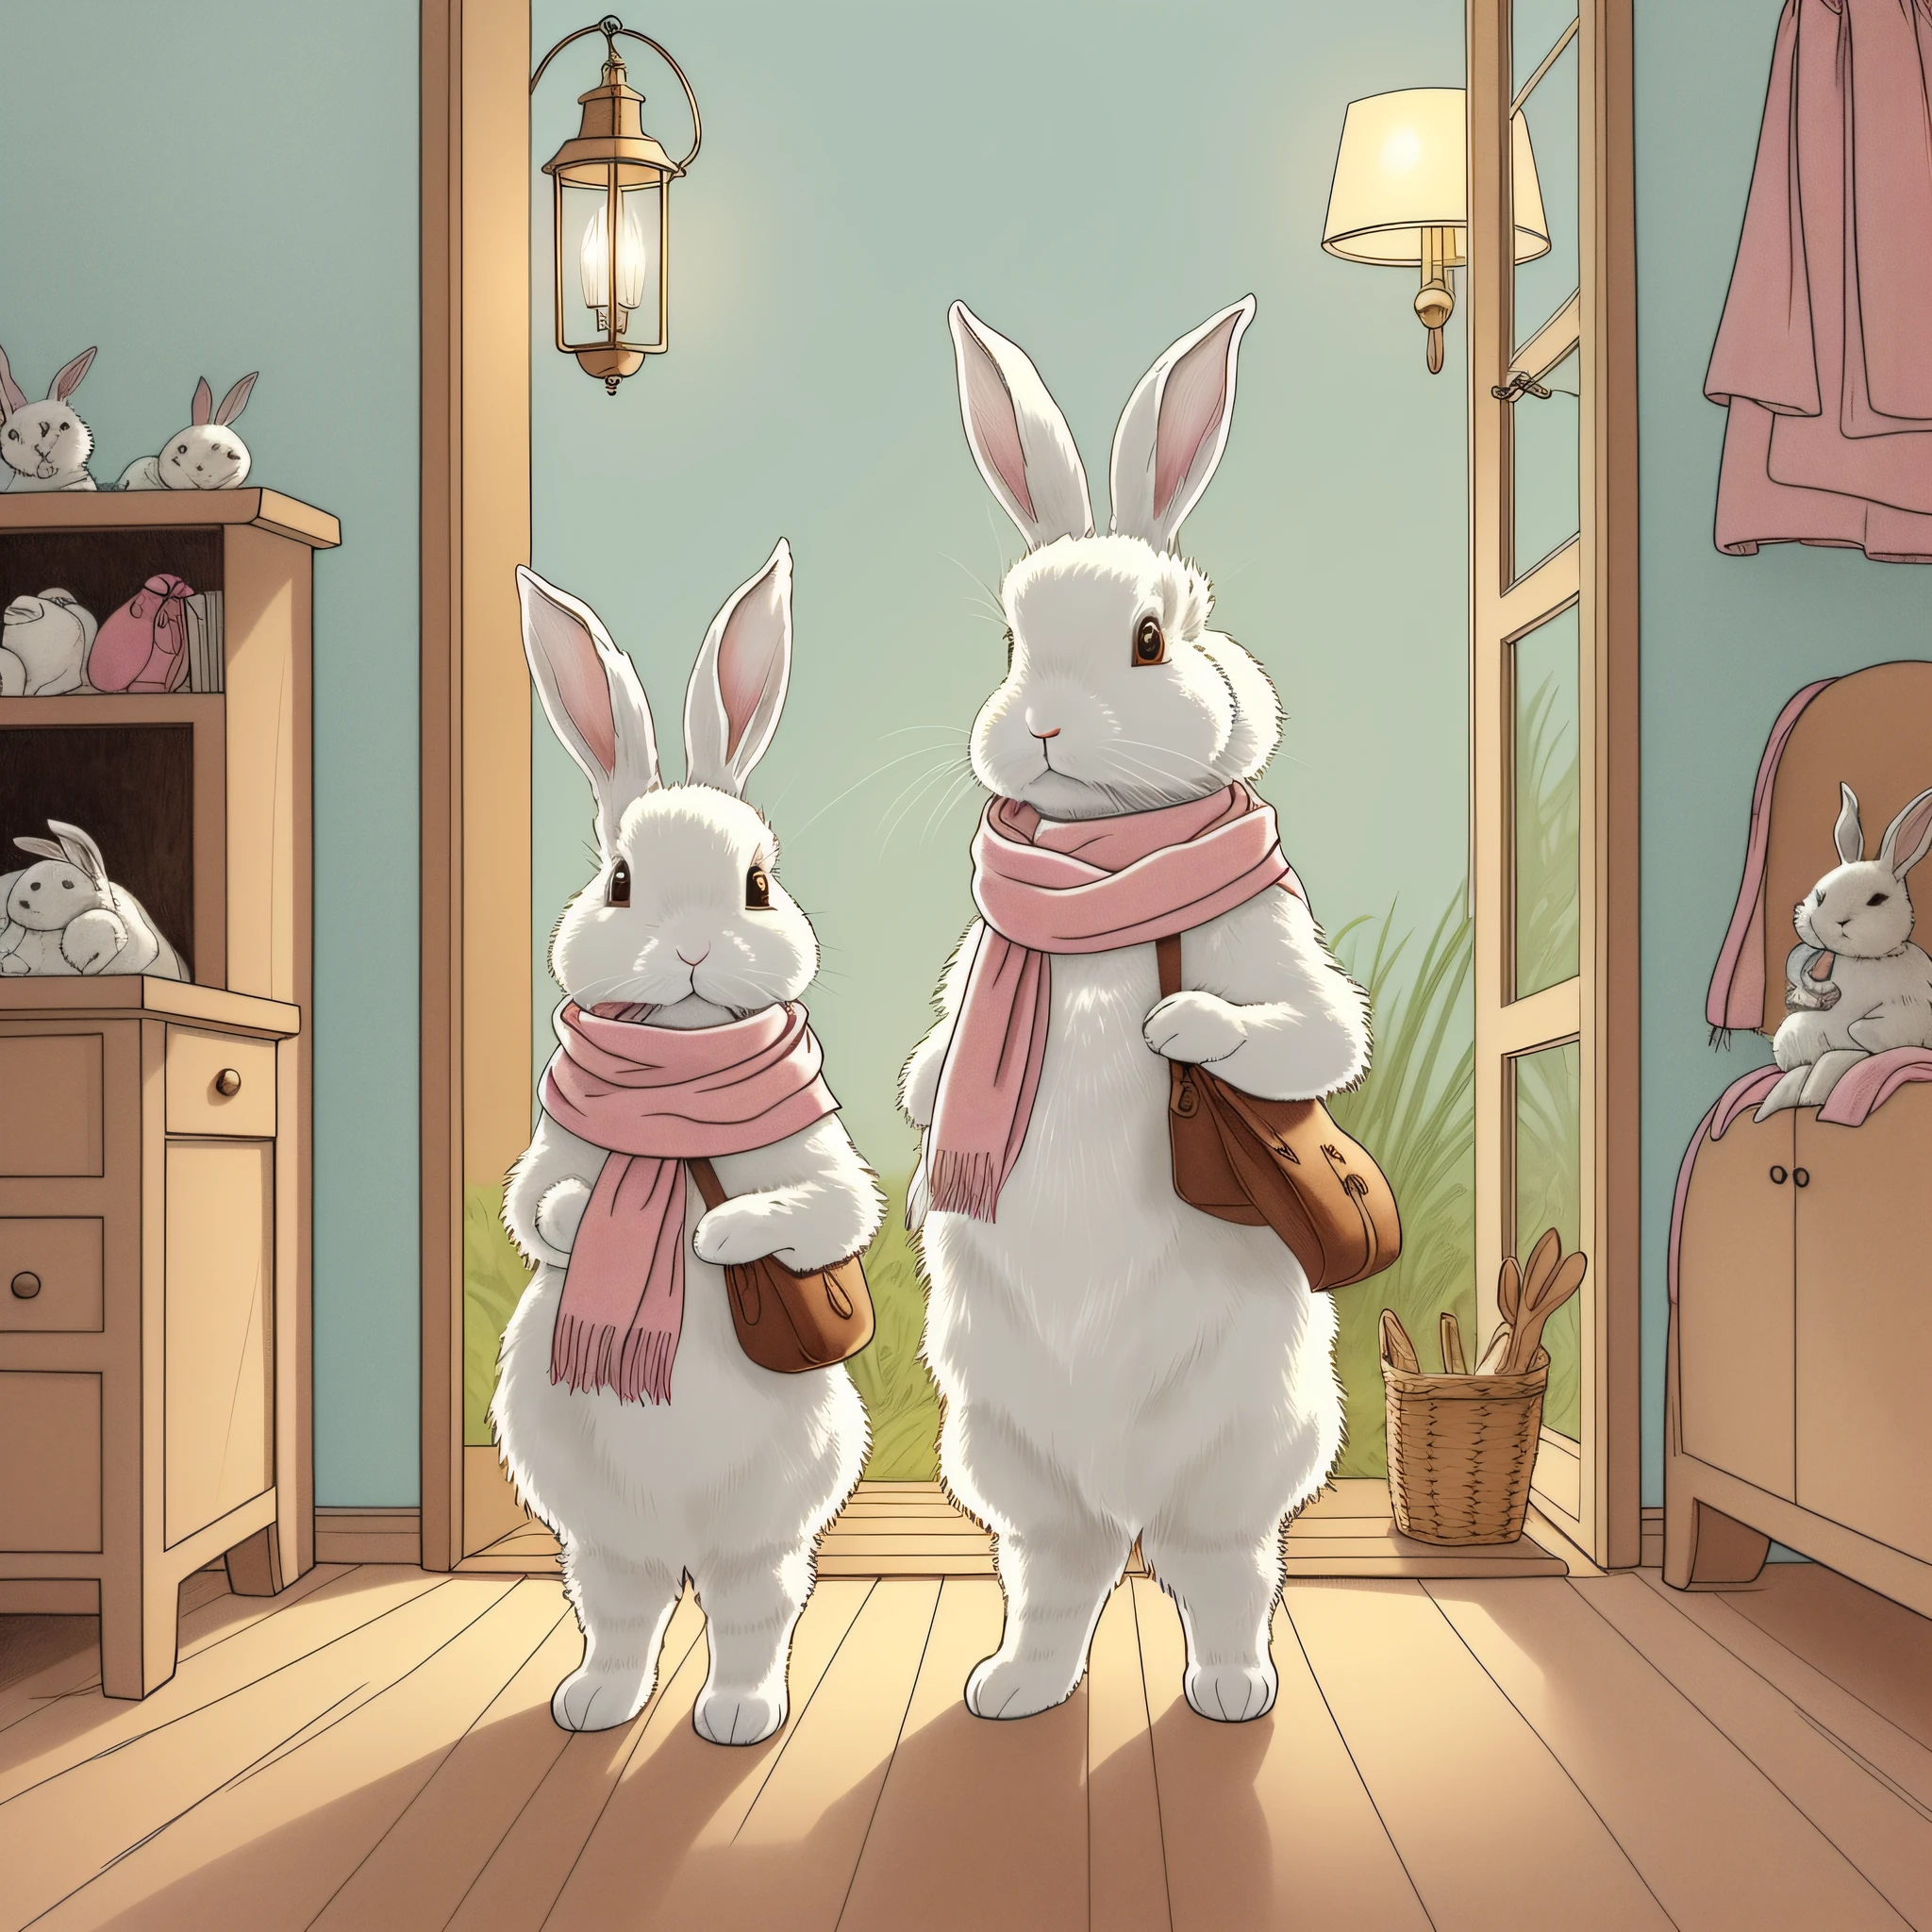 儿童图画书插图、两只白兔、脖子上围着粉色围巾的兔子、脖子上围着浅蓝色围巾的兔子、拟人化兔子、双足兔、兔子在屋里做准备、兔子与皮包、可怜、彩色插图